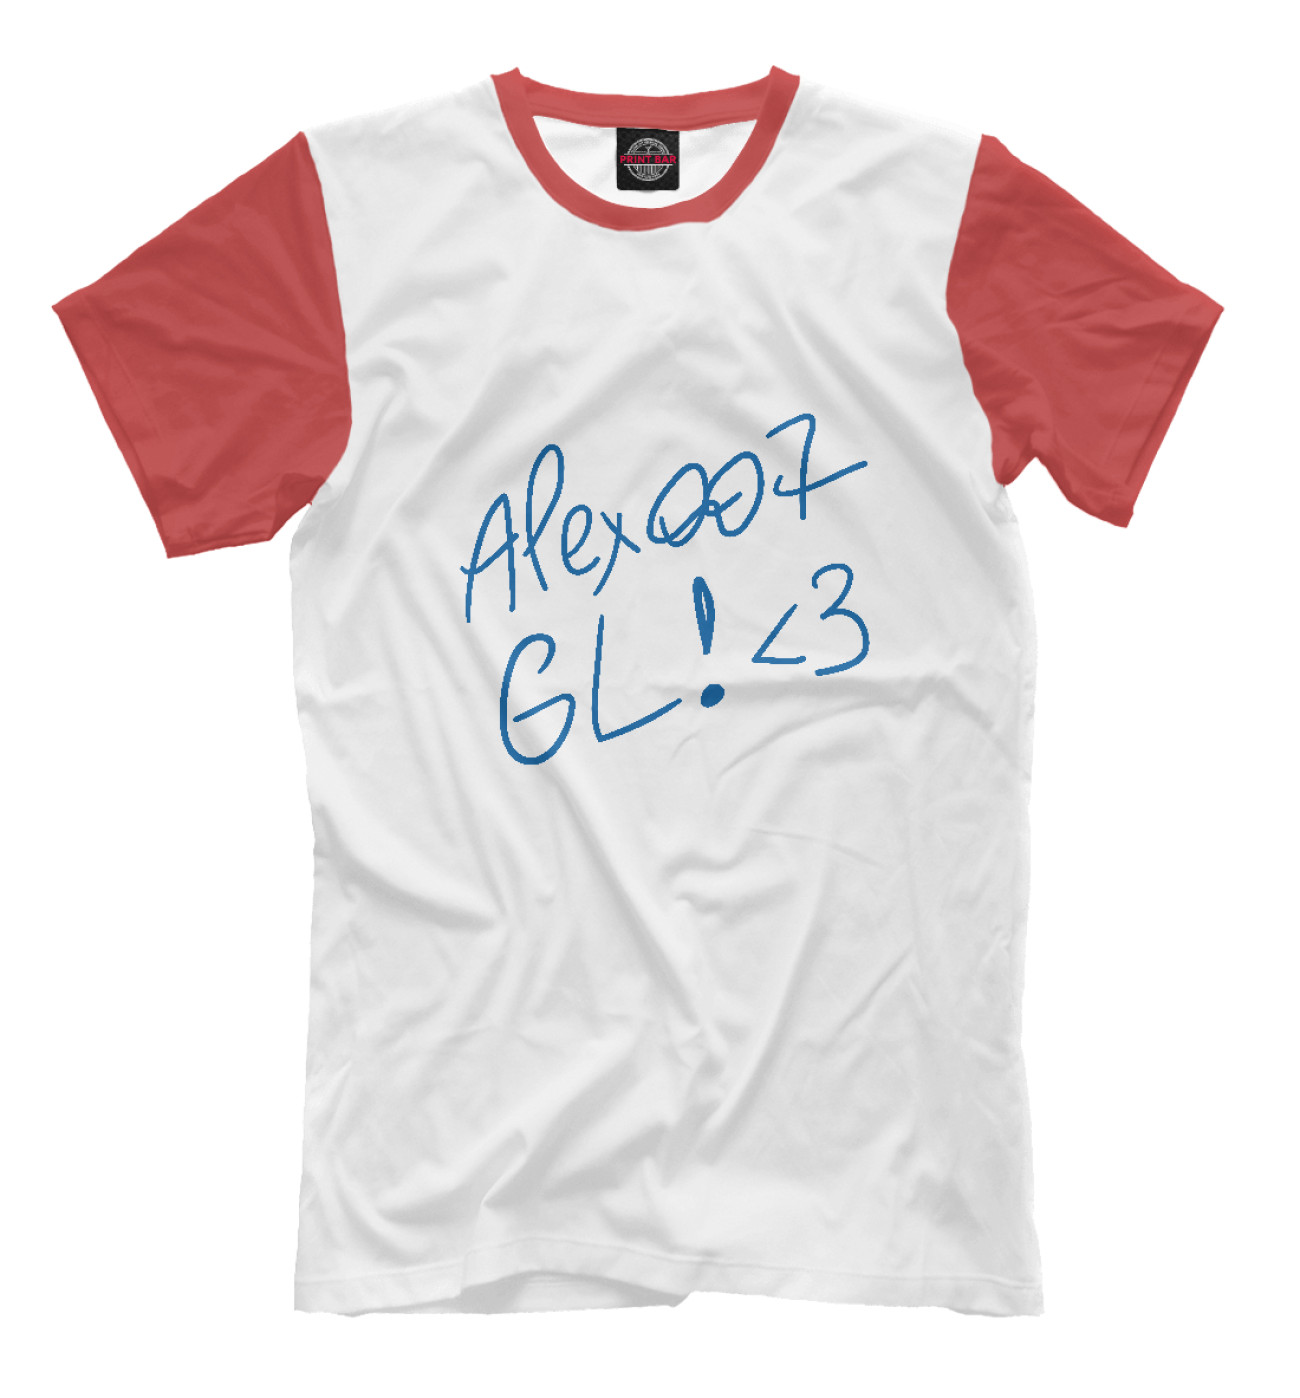 Мужская Футболка ALEX007: GL (red), артикул: CBS-369905-fut-2